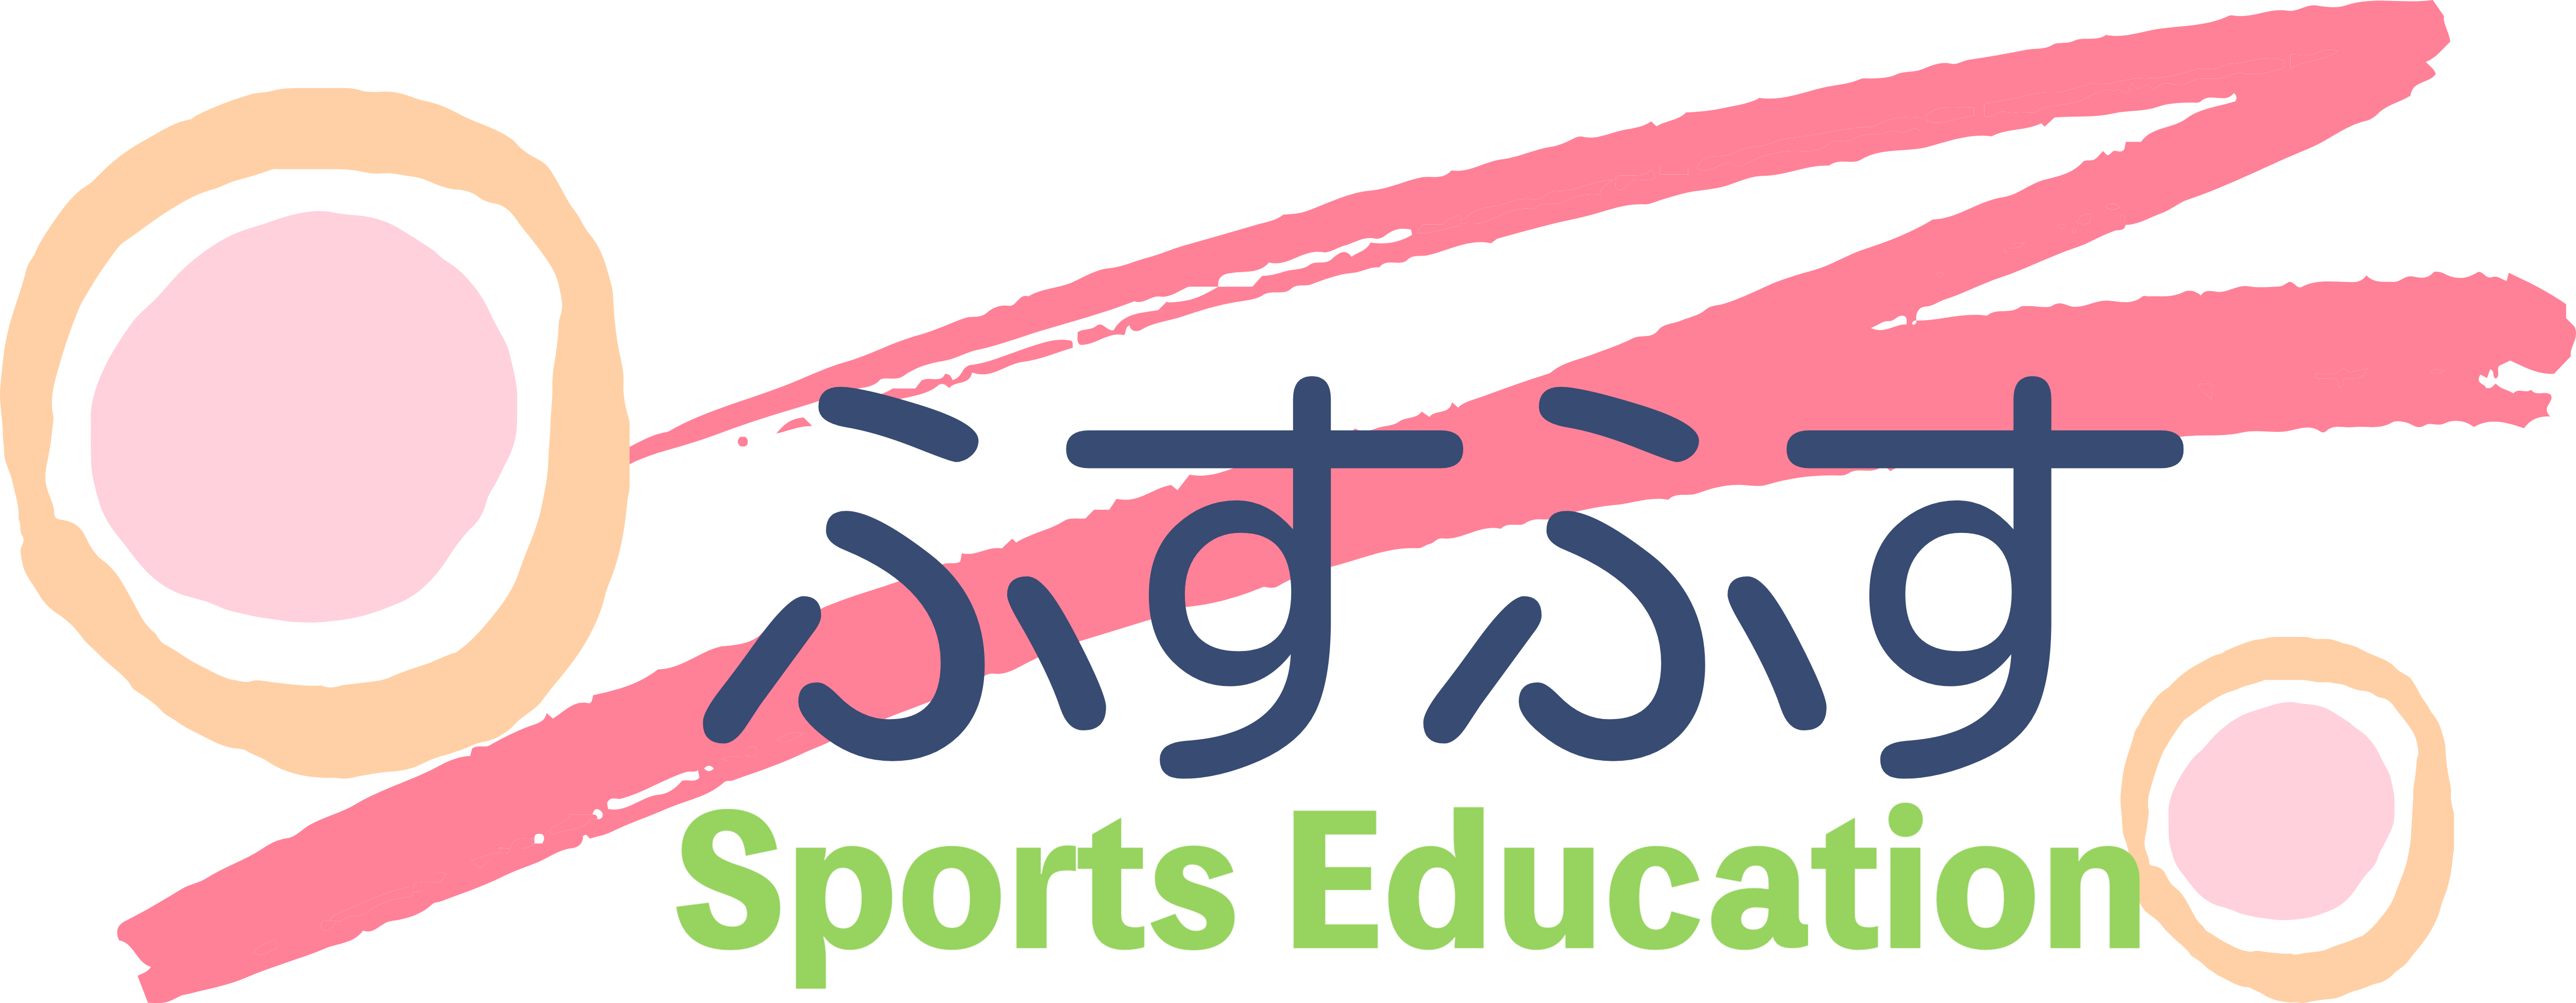 ふすふす-Sports Education-